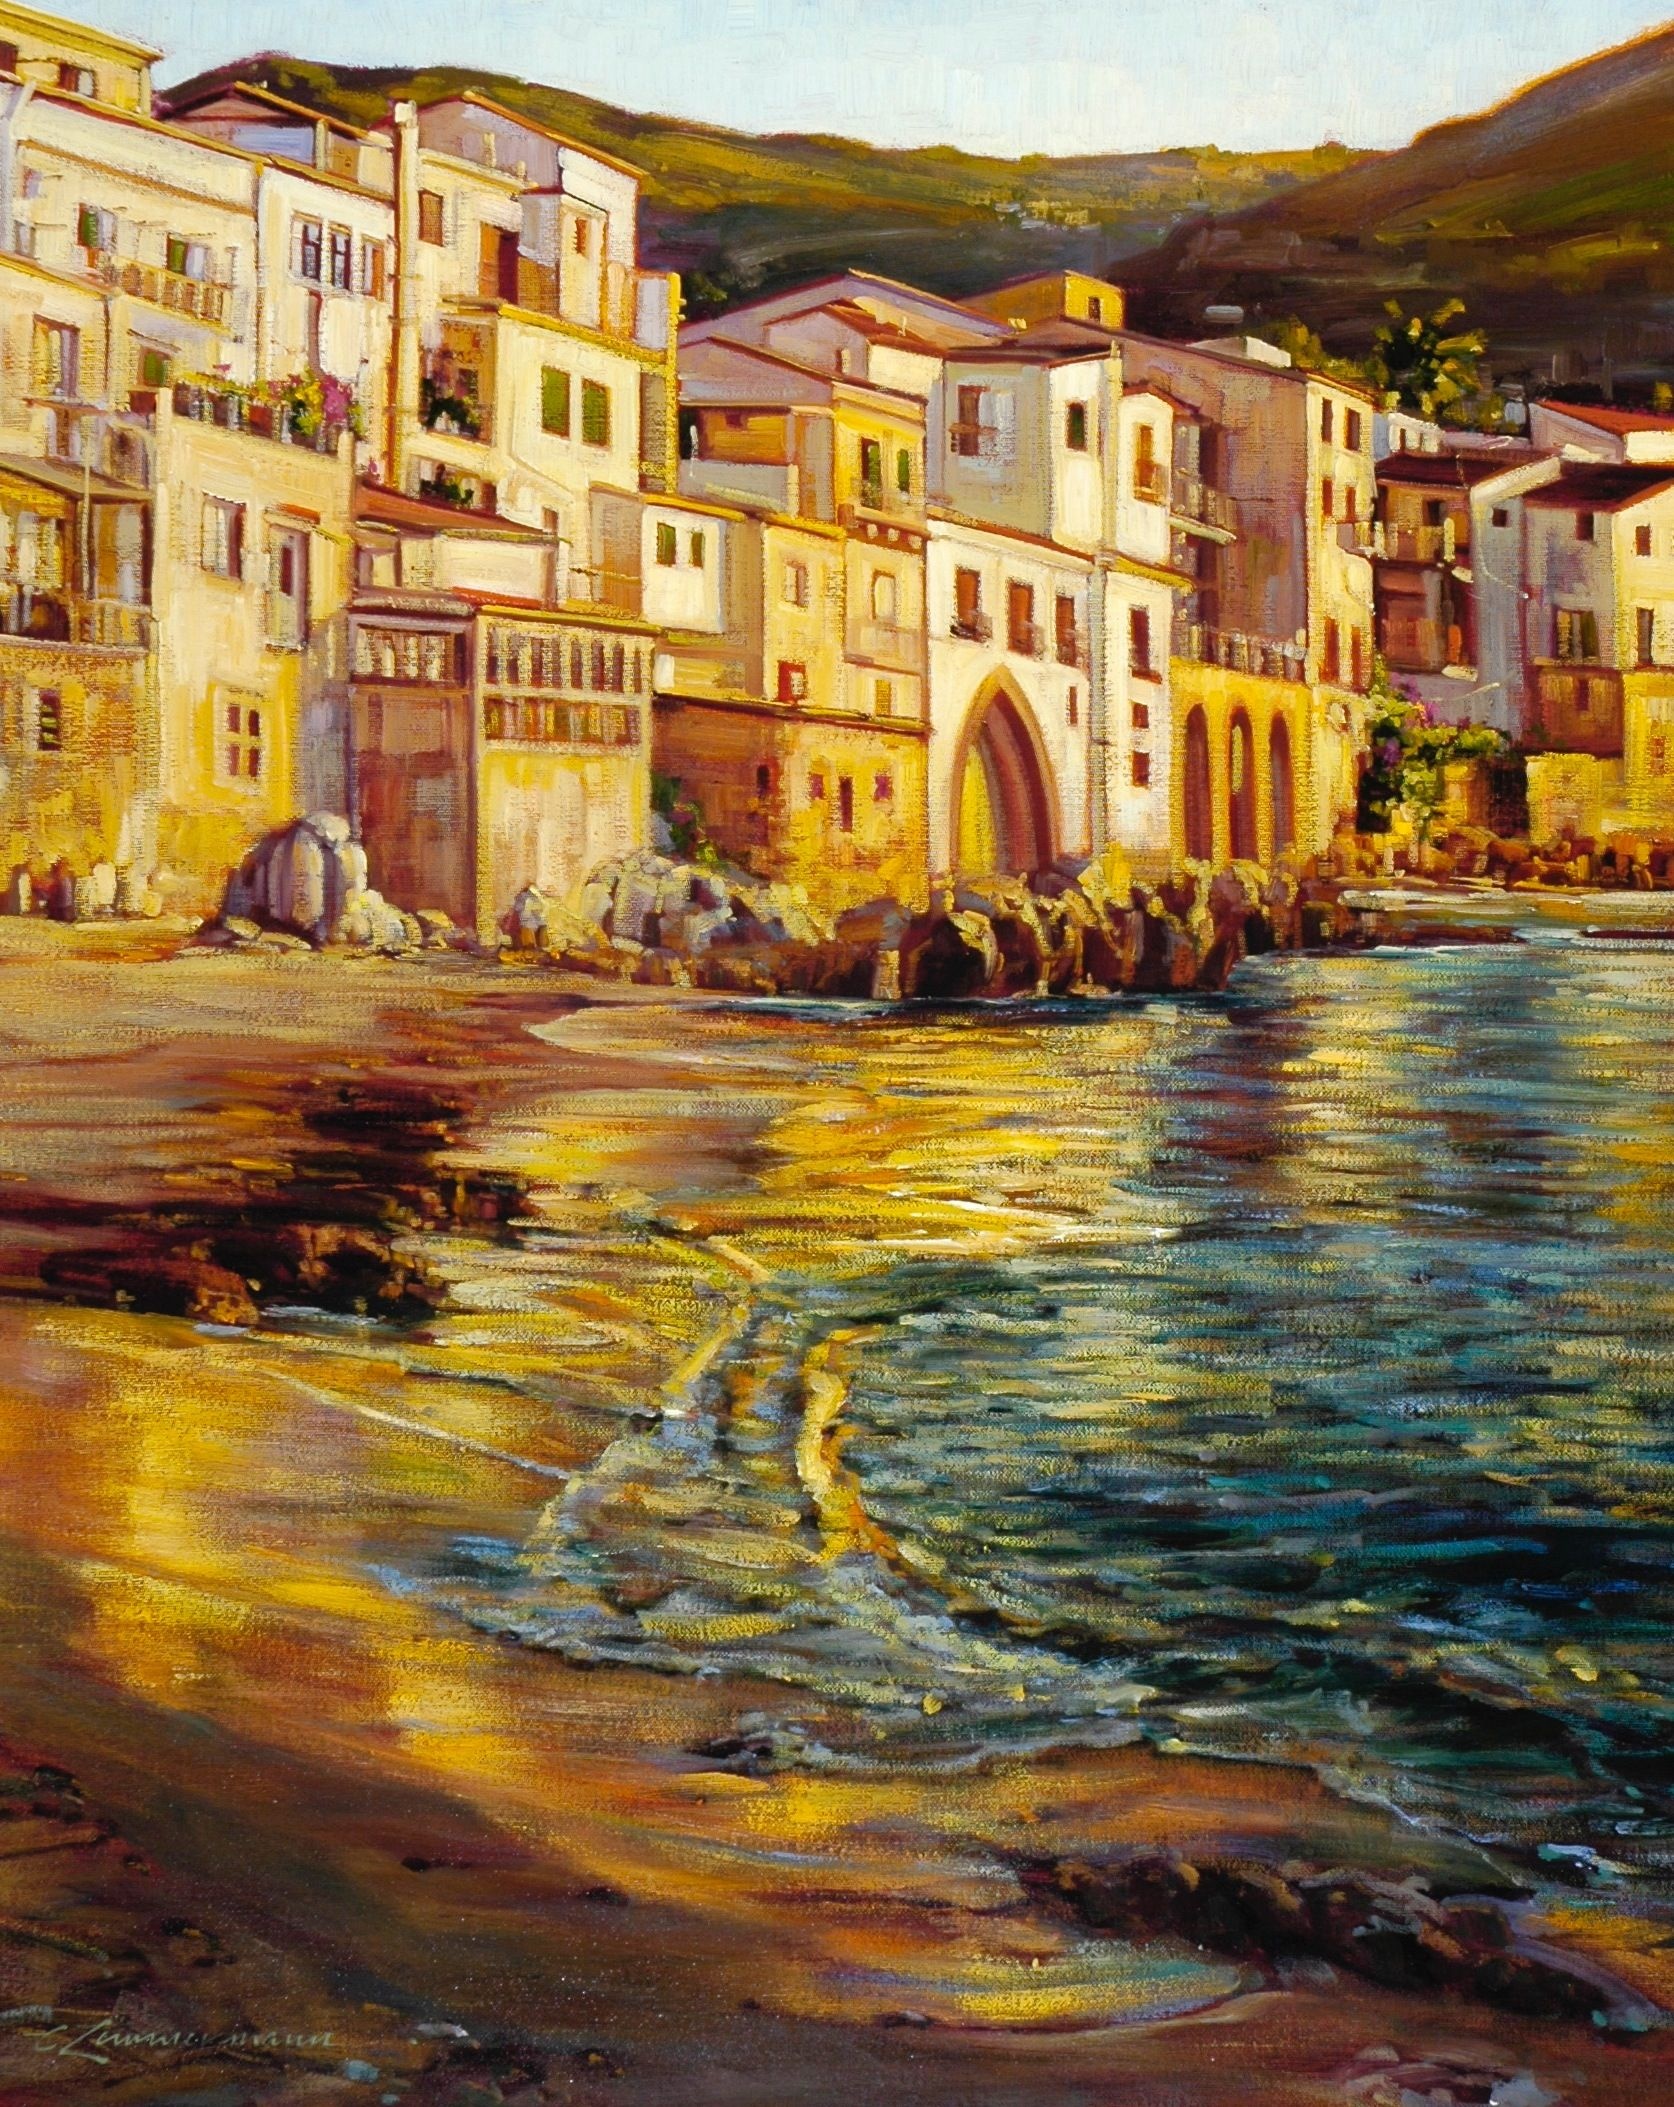 Cefalu, Mediterranean Paintings, Sicily, Art, 1680x2110 HD Handy